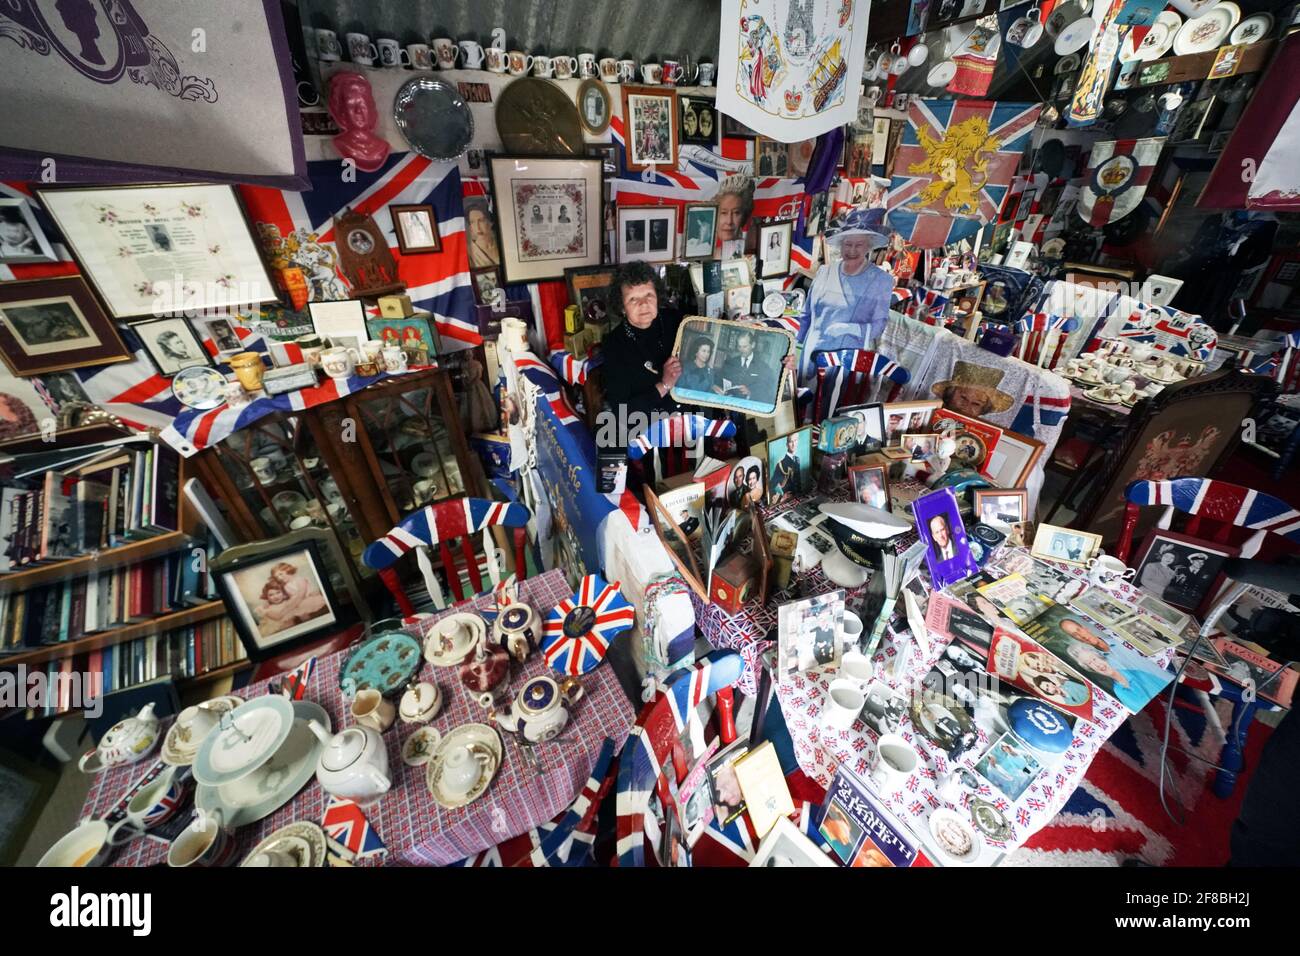 Anita Atkinson arreglando la Reina y la sección del Duque de Edimburgo de su colección real de recuerdos, una de las más grandes del mundo, en su casa en Crook, Condado de Durham. La niña de 64 años dice que fue devastada al escuchar la noticia de la muerte del príncipe Felipe. Fecha de la foto: Martes 13 de abril de 2021. Foto de stock